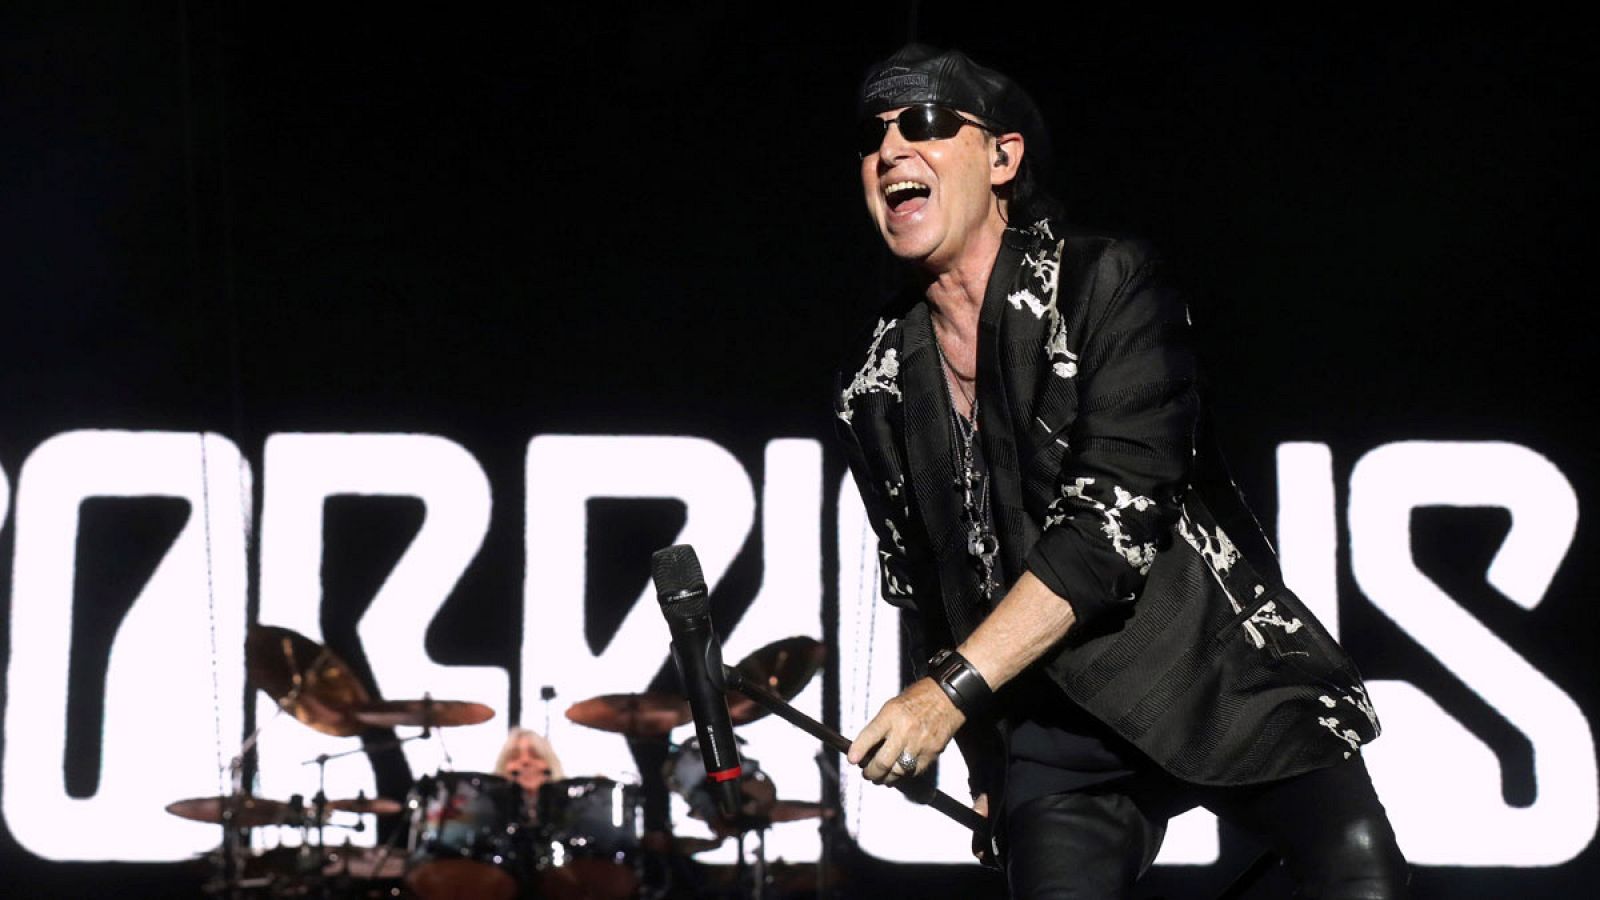 El cantante del grupo alemán Scorpions, Klaus Meine, durante su actuación en el Download Festival 2019 en la Caja Mágica de Madrid.